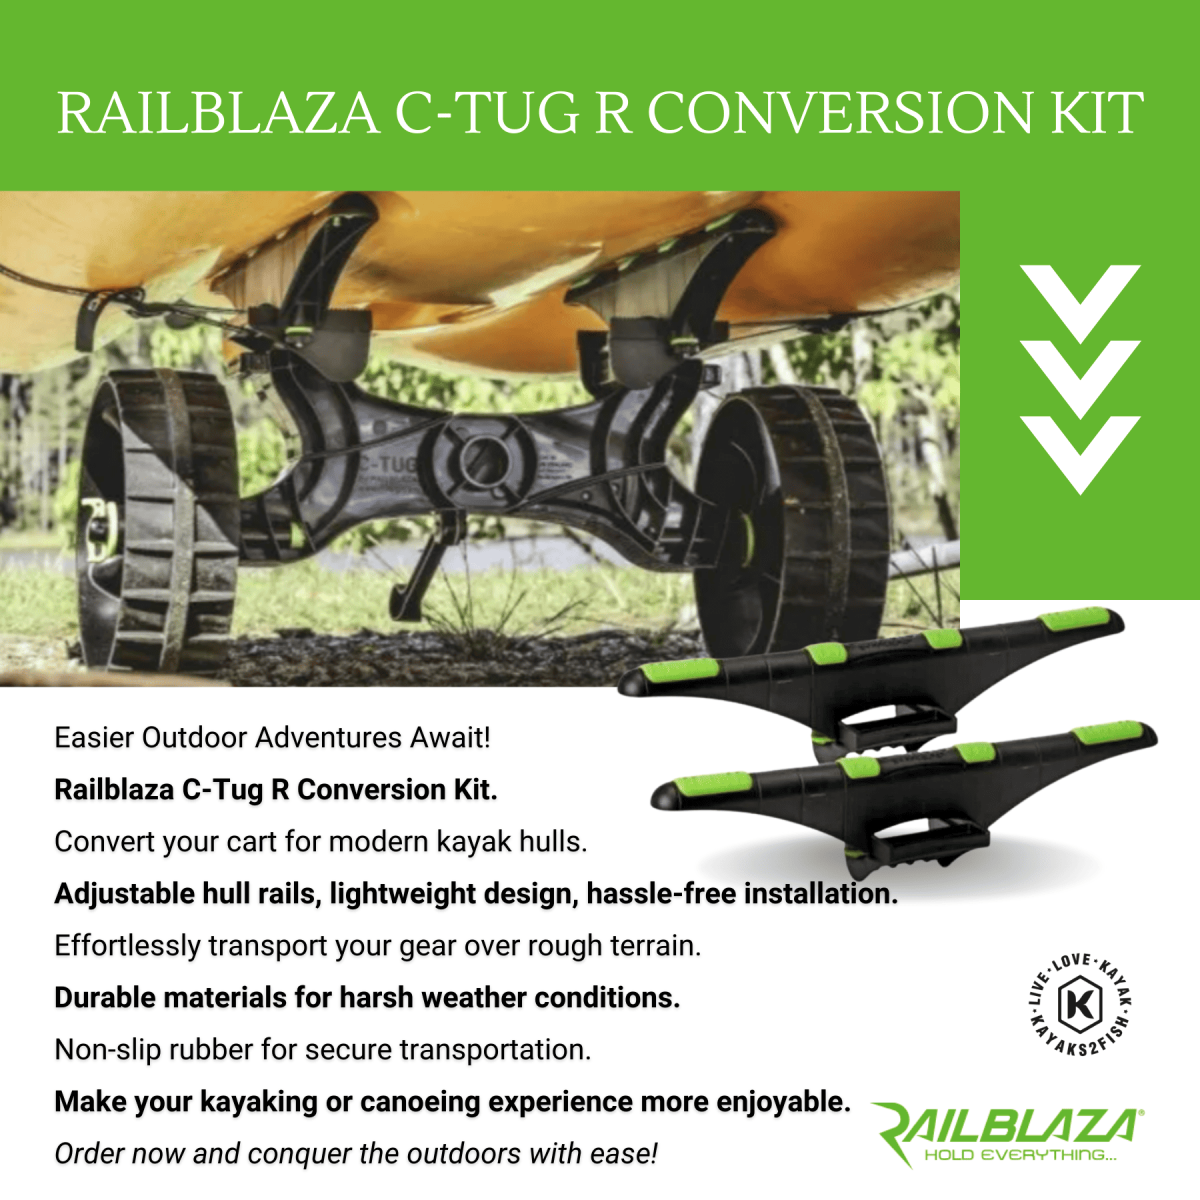 Railblaza C-Tug R Conversion Kit